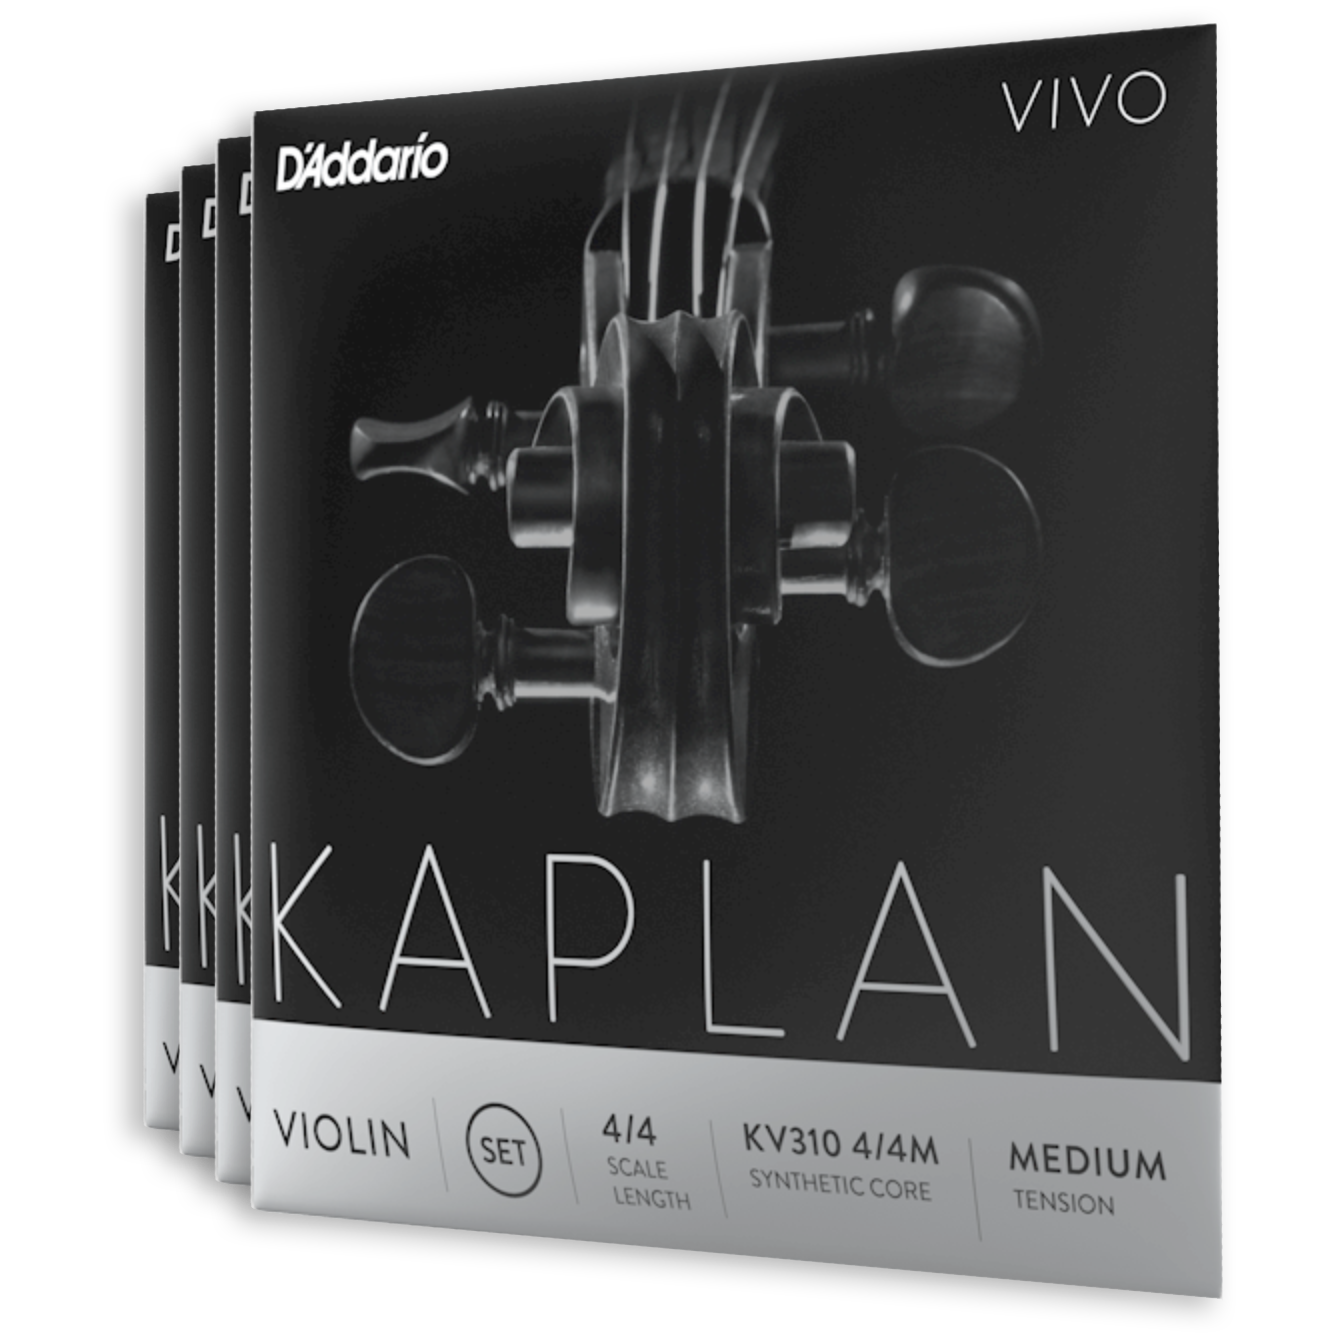 Kaplan Vivo Violin set